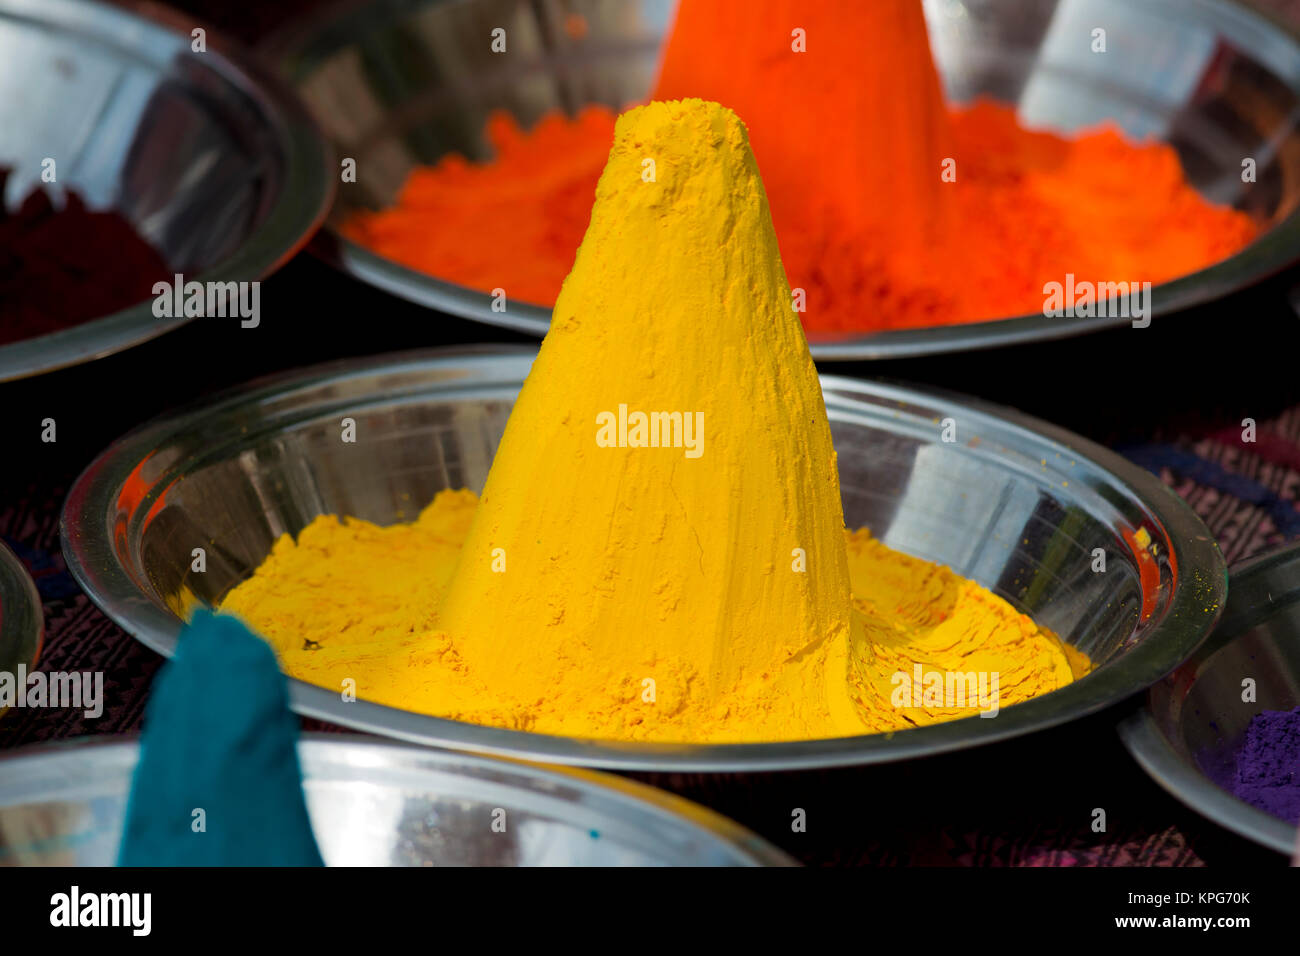 Colori indiani immagini e fotografie stock ad alta risoluzione - Alamy